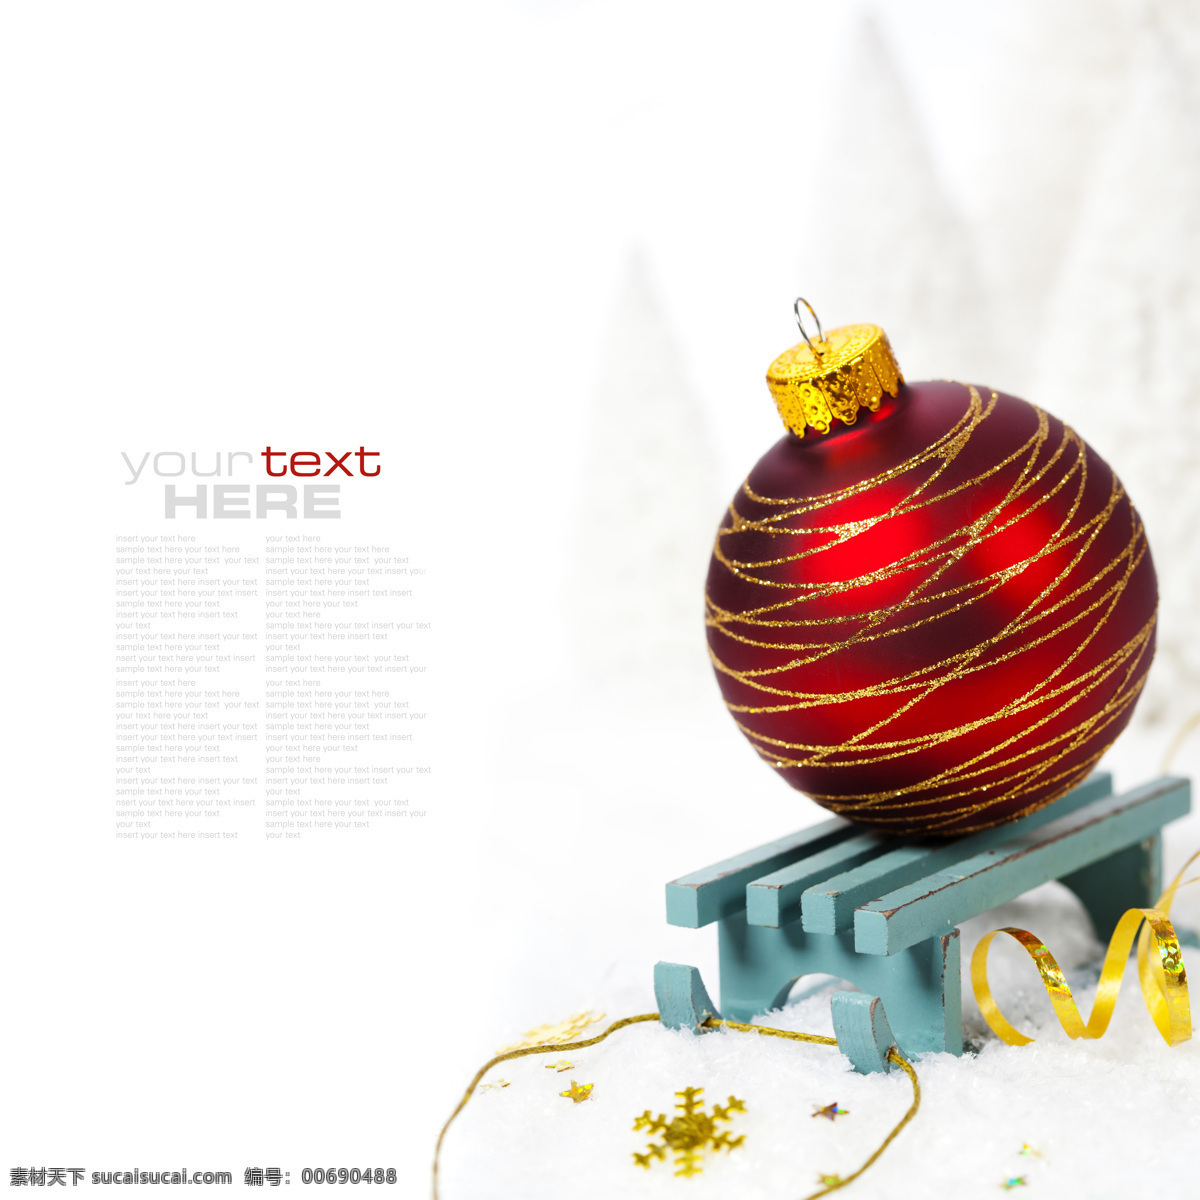 圣诞 彩球 长椅 背景 素材图片 圣诞彩球 椅子 彩带 装饰品 背景素材 节日庆典 生活百科